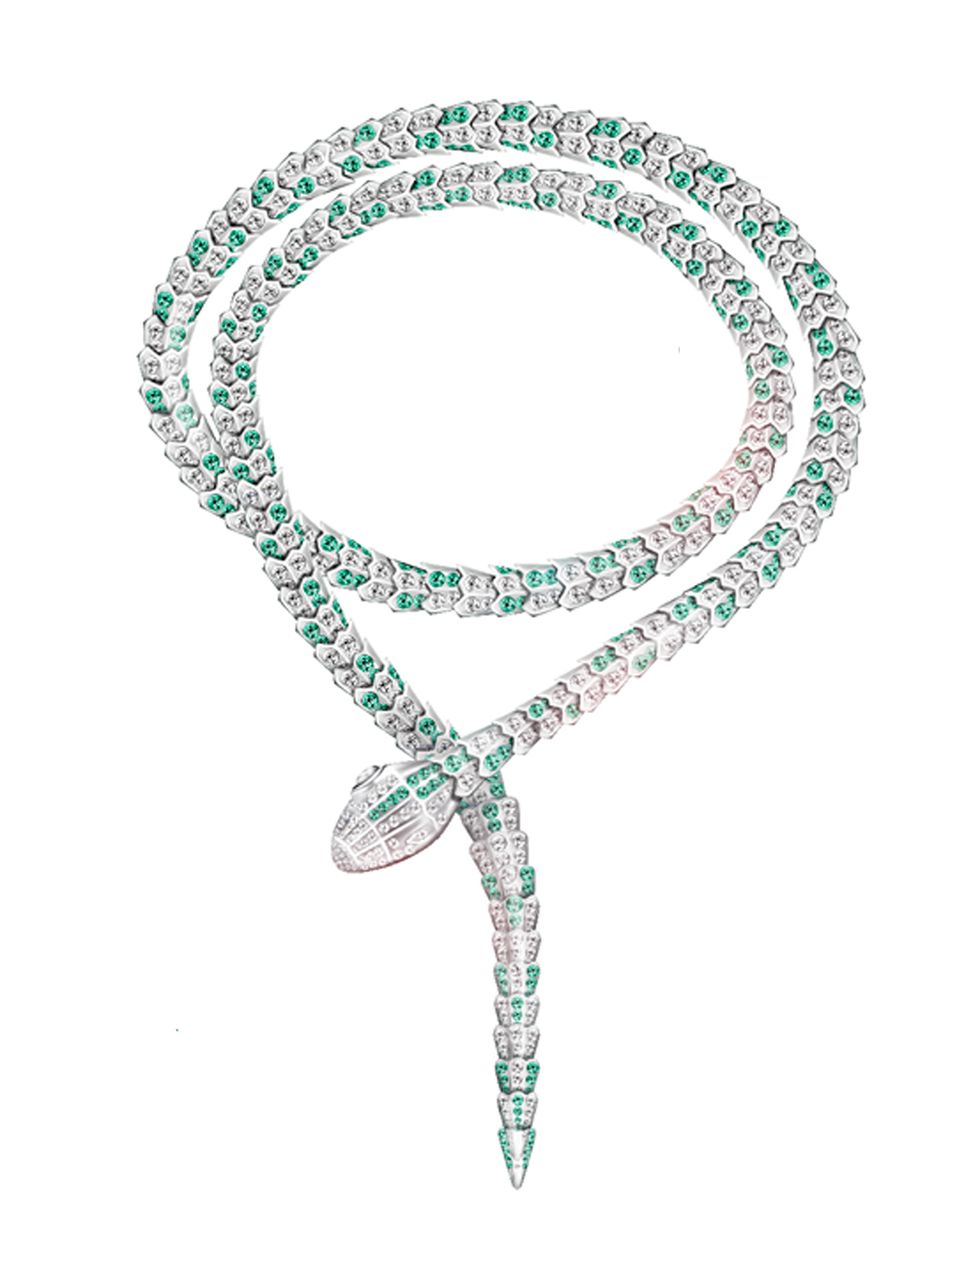 <p>En oro blanco, adornado con diamantes y esmeraldas, este collar está valorado en 1,3 millones de dólares. Elizabeth Taylor llevó numerosas serpientes en su papel en la película 'Cleopatra'.</p>